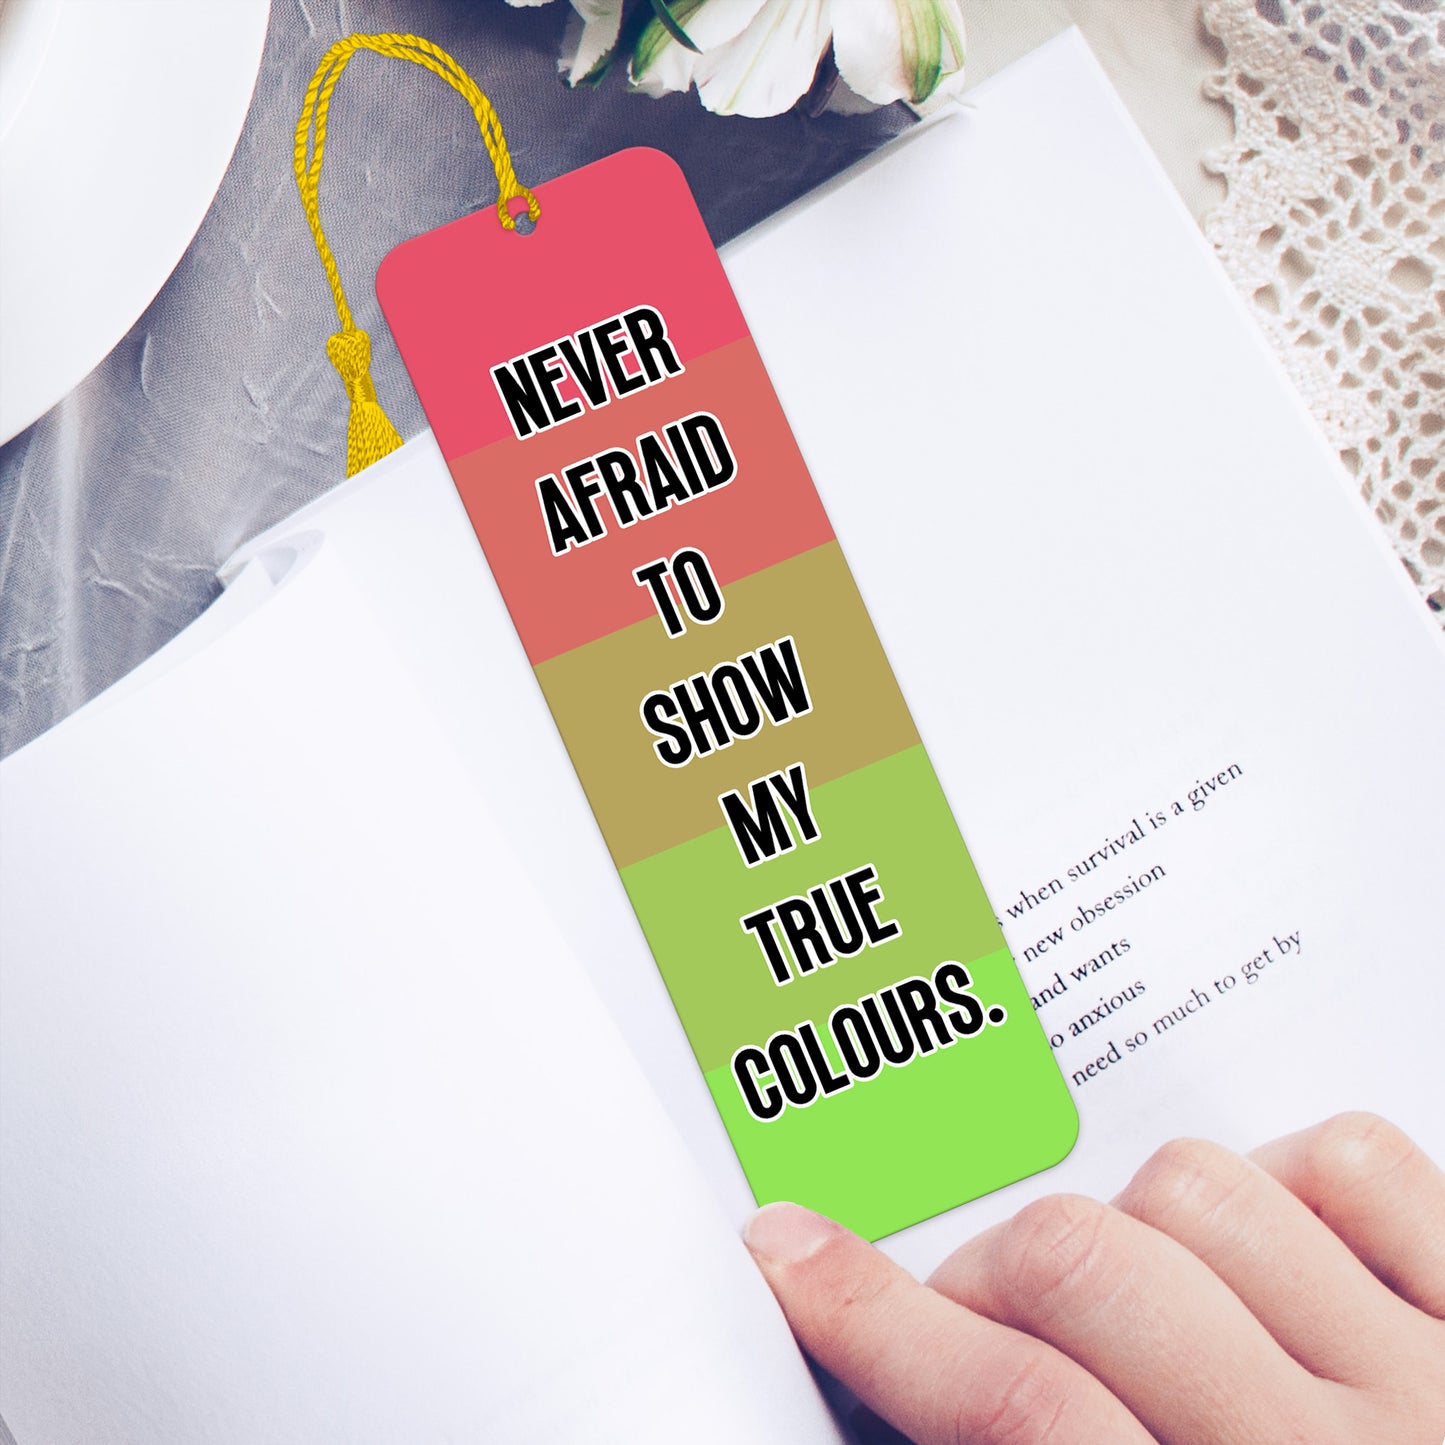 Aroflux pride luxury aluminium bookmark never afraid to show my true colours